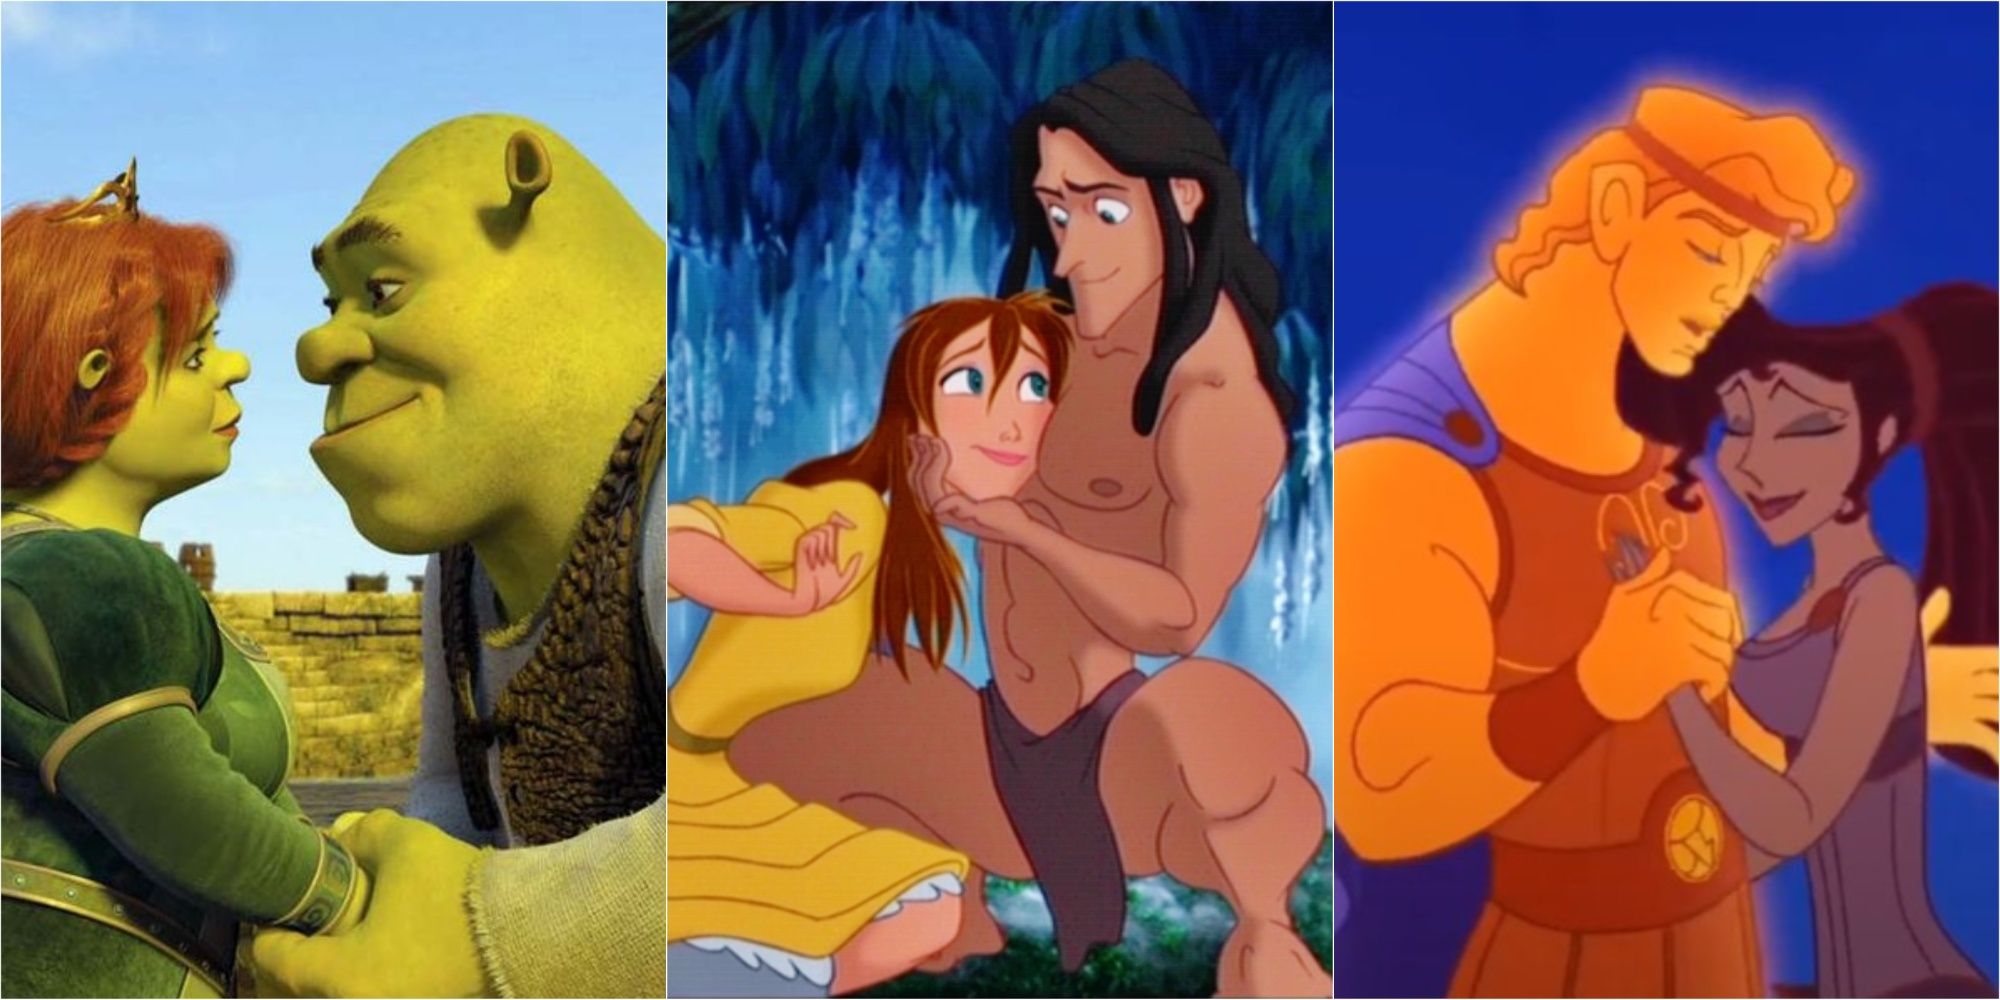 A feature image of Shrek & FIona, Tarzan & Jane, and Hercules & Megara